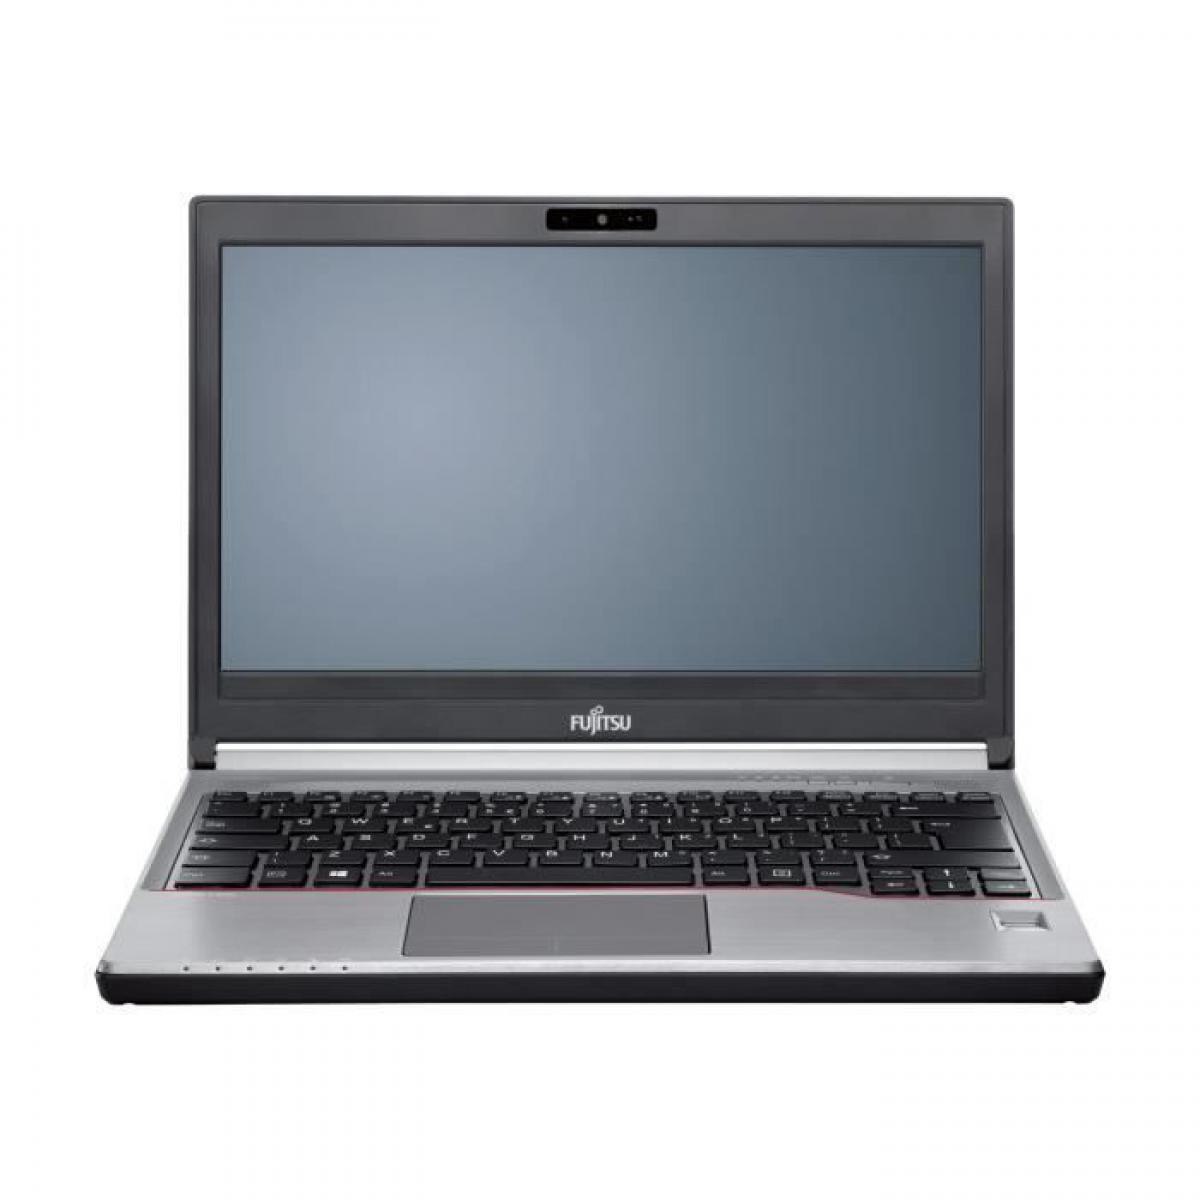 Fujitsu - Fujitsu LB E736 13p i7-6600U 8G 512G(P) LifeBook E736 13,3p i7-6600U 8GB 512GB Win10p(P) Intel Core i7 - 13.3' - PC Portable